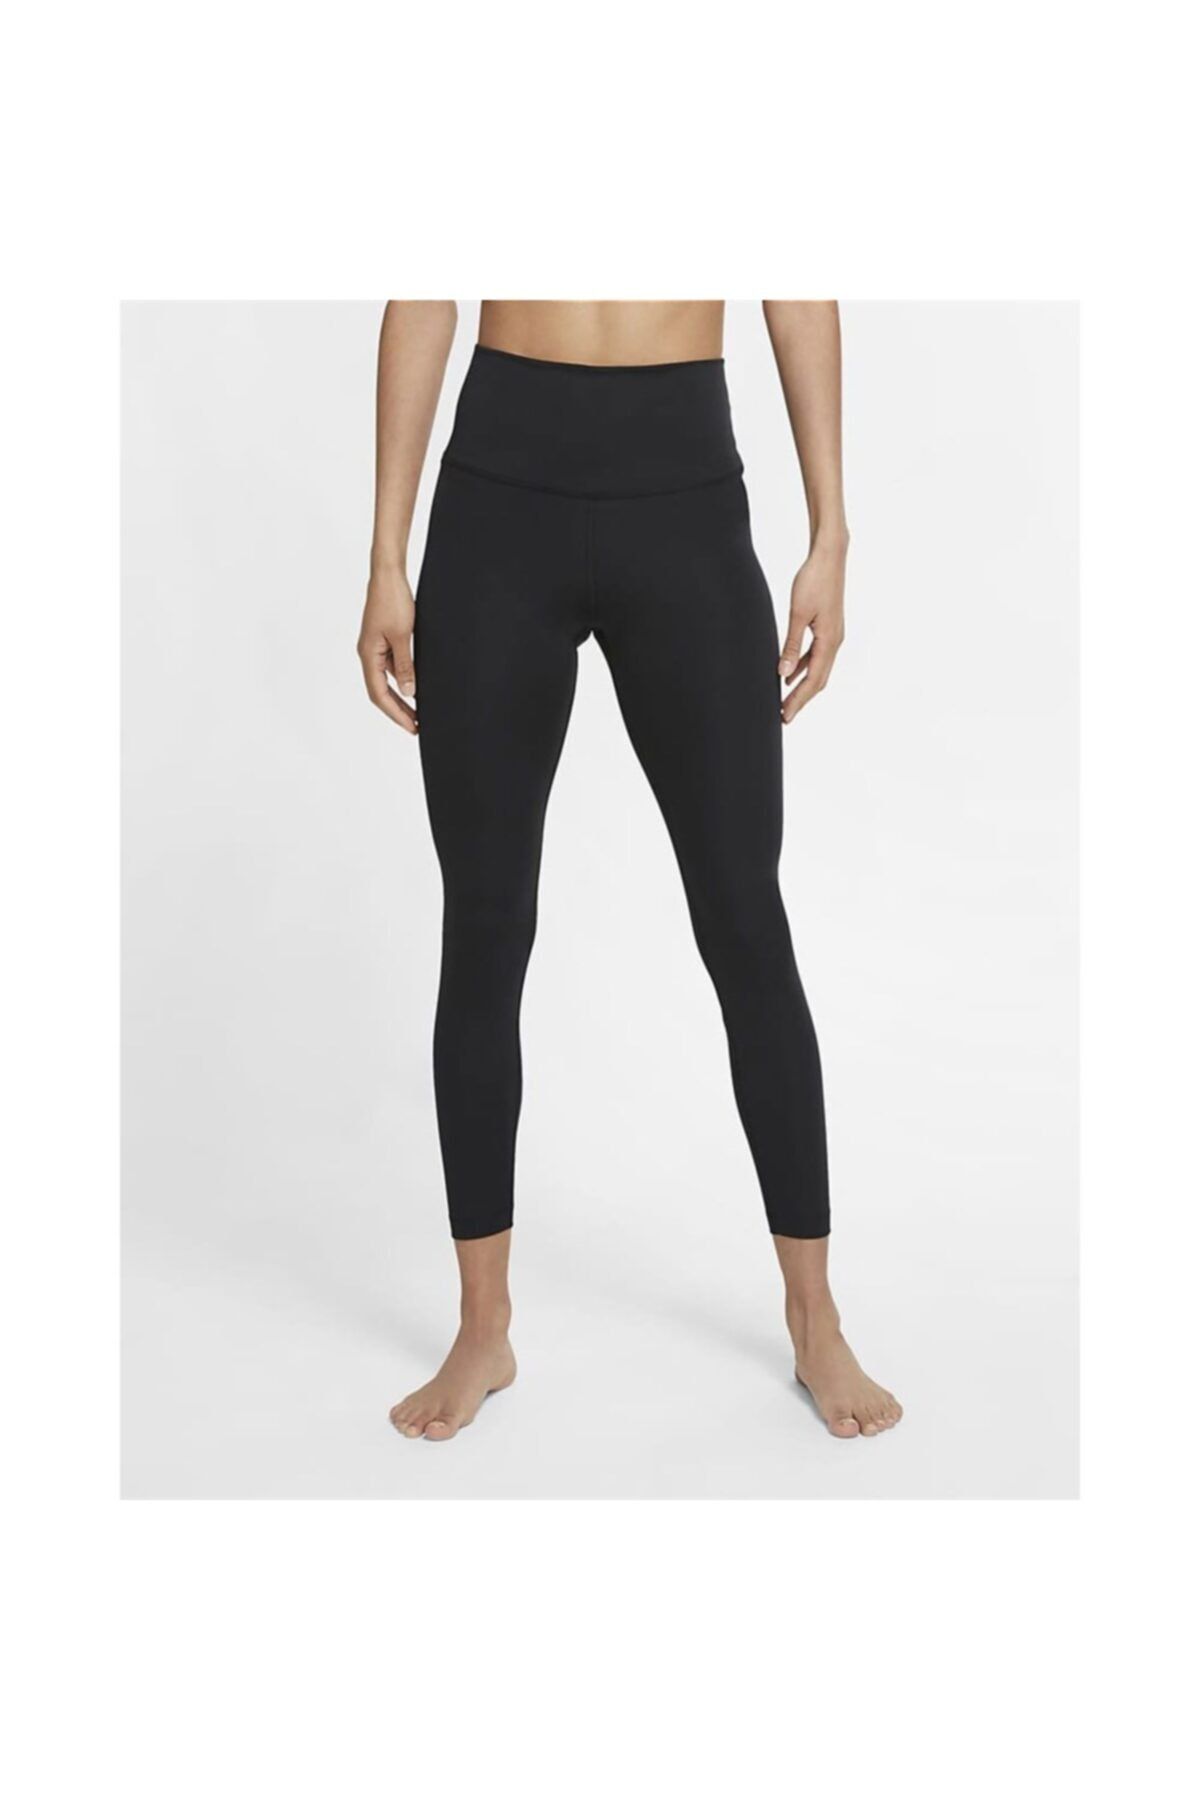 Nike The Yoga 7/8 Tıght Kadın Siyah Tayt - Cu5293-010